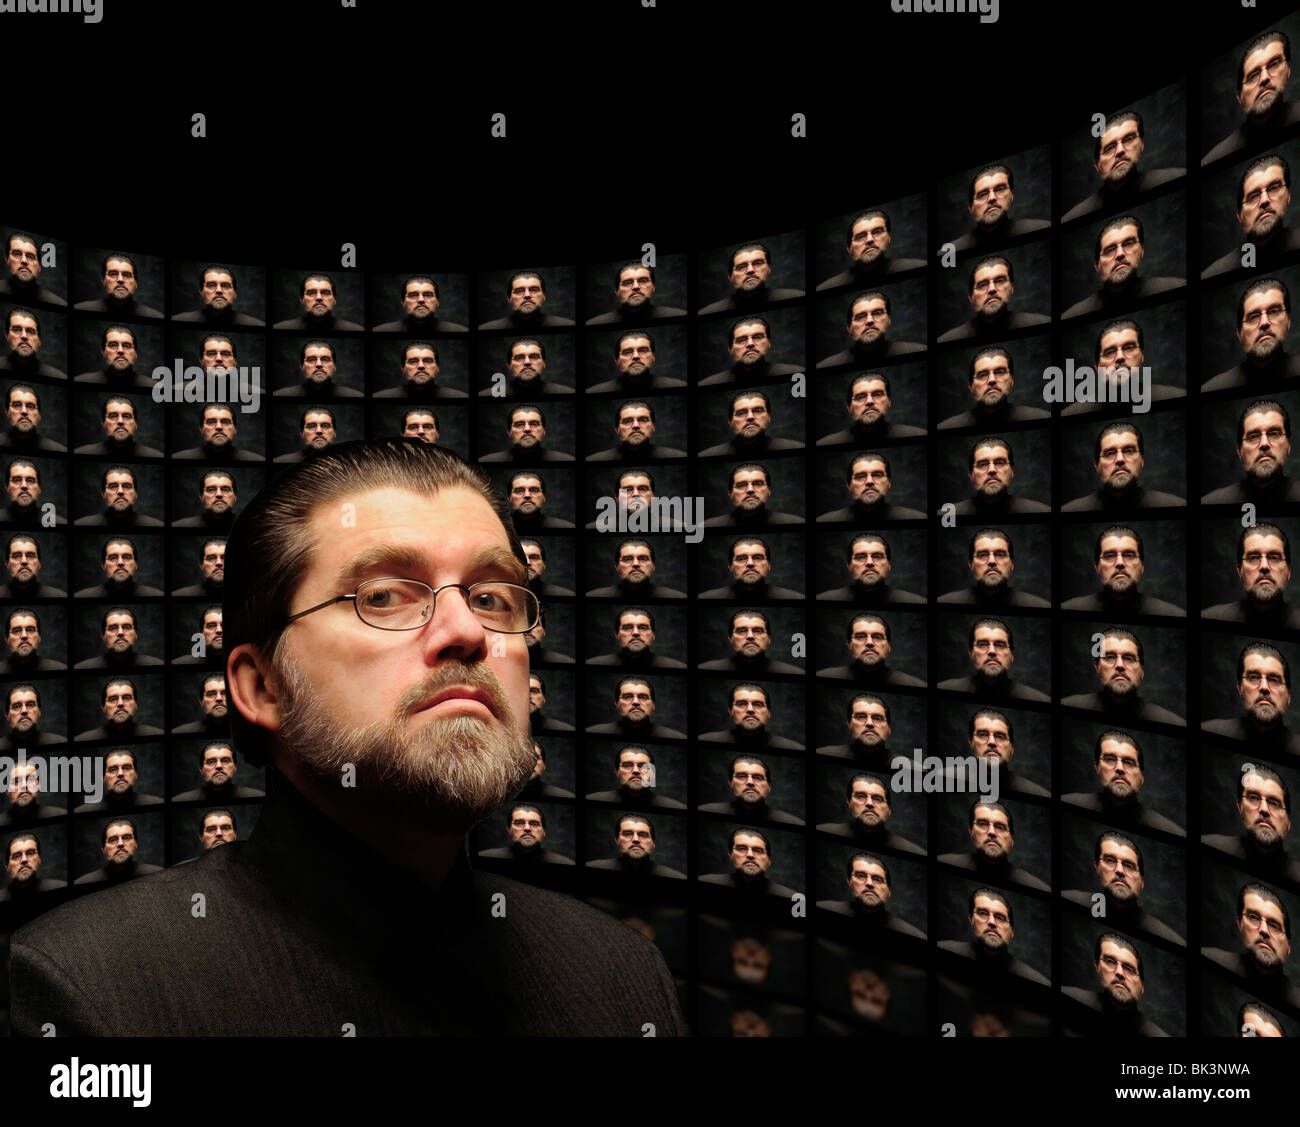 Mehrerer Indoktrination Monitore zeigen gleiche ominösen Orwellschen Mann mit demselben Mann im Vordergrund Stockfoto